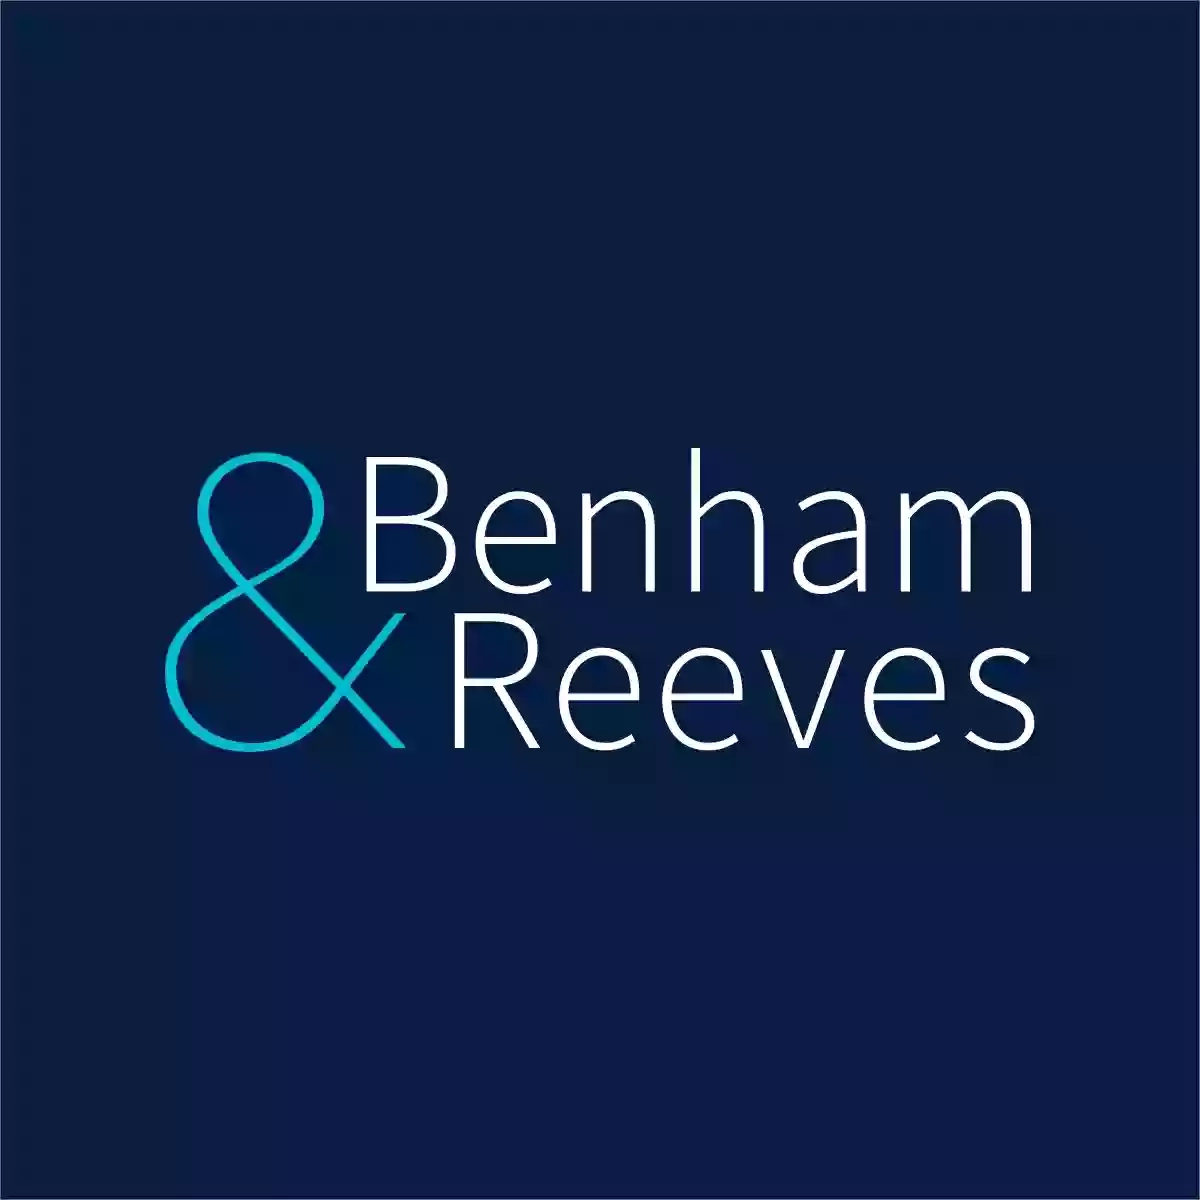 Benham & Reeves - Hammersmith Estate Agents